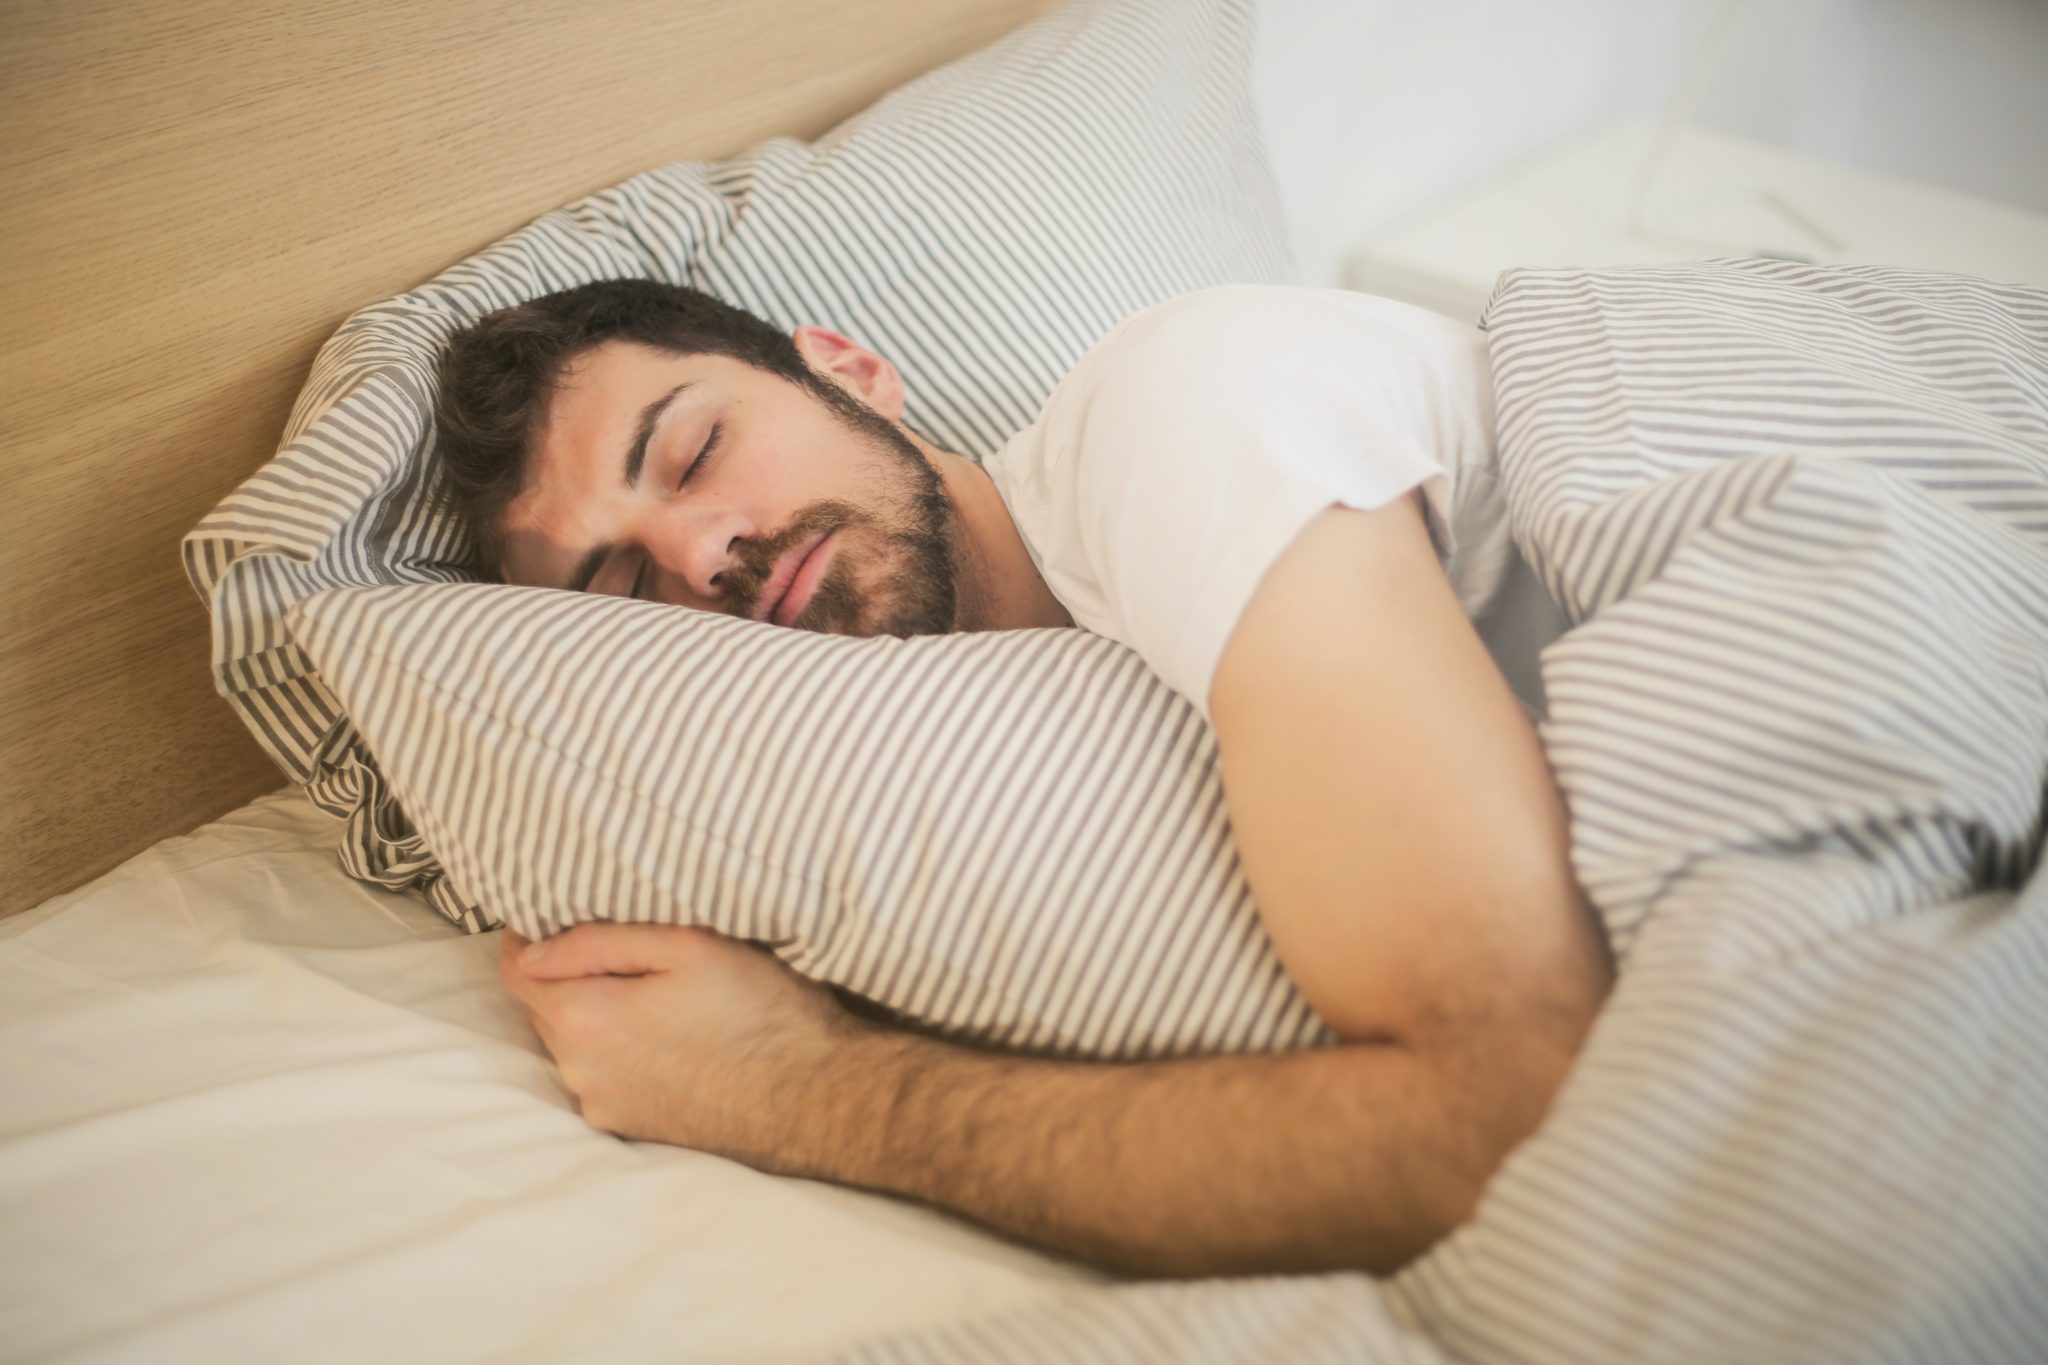 Como dormir mejor siguiendo consejos naturales